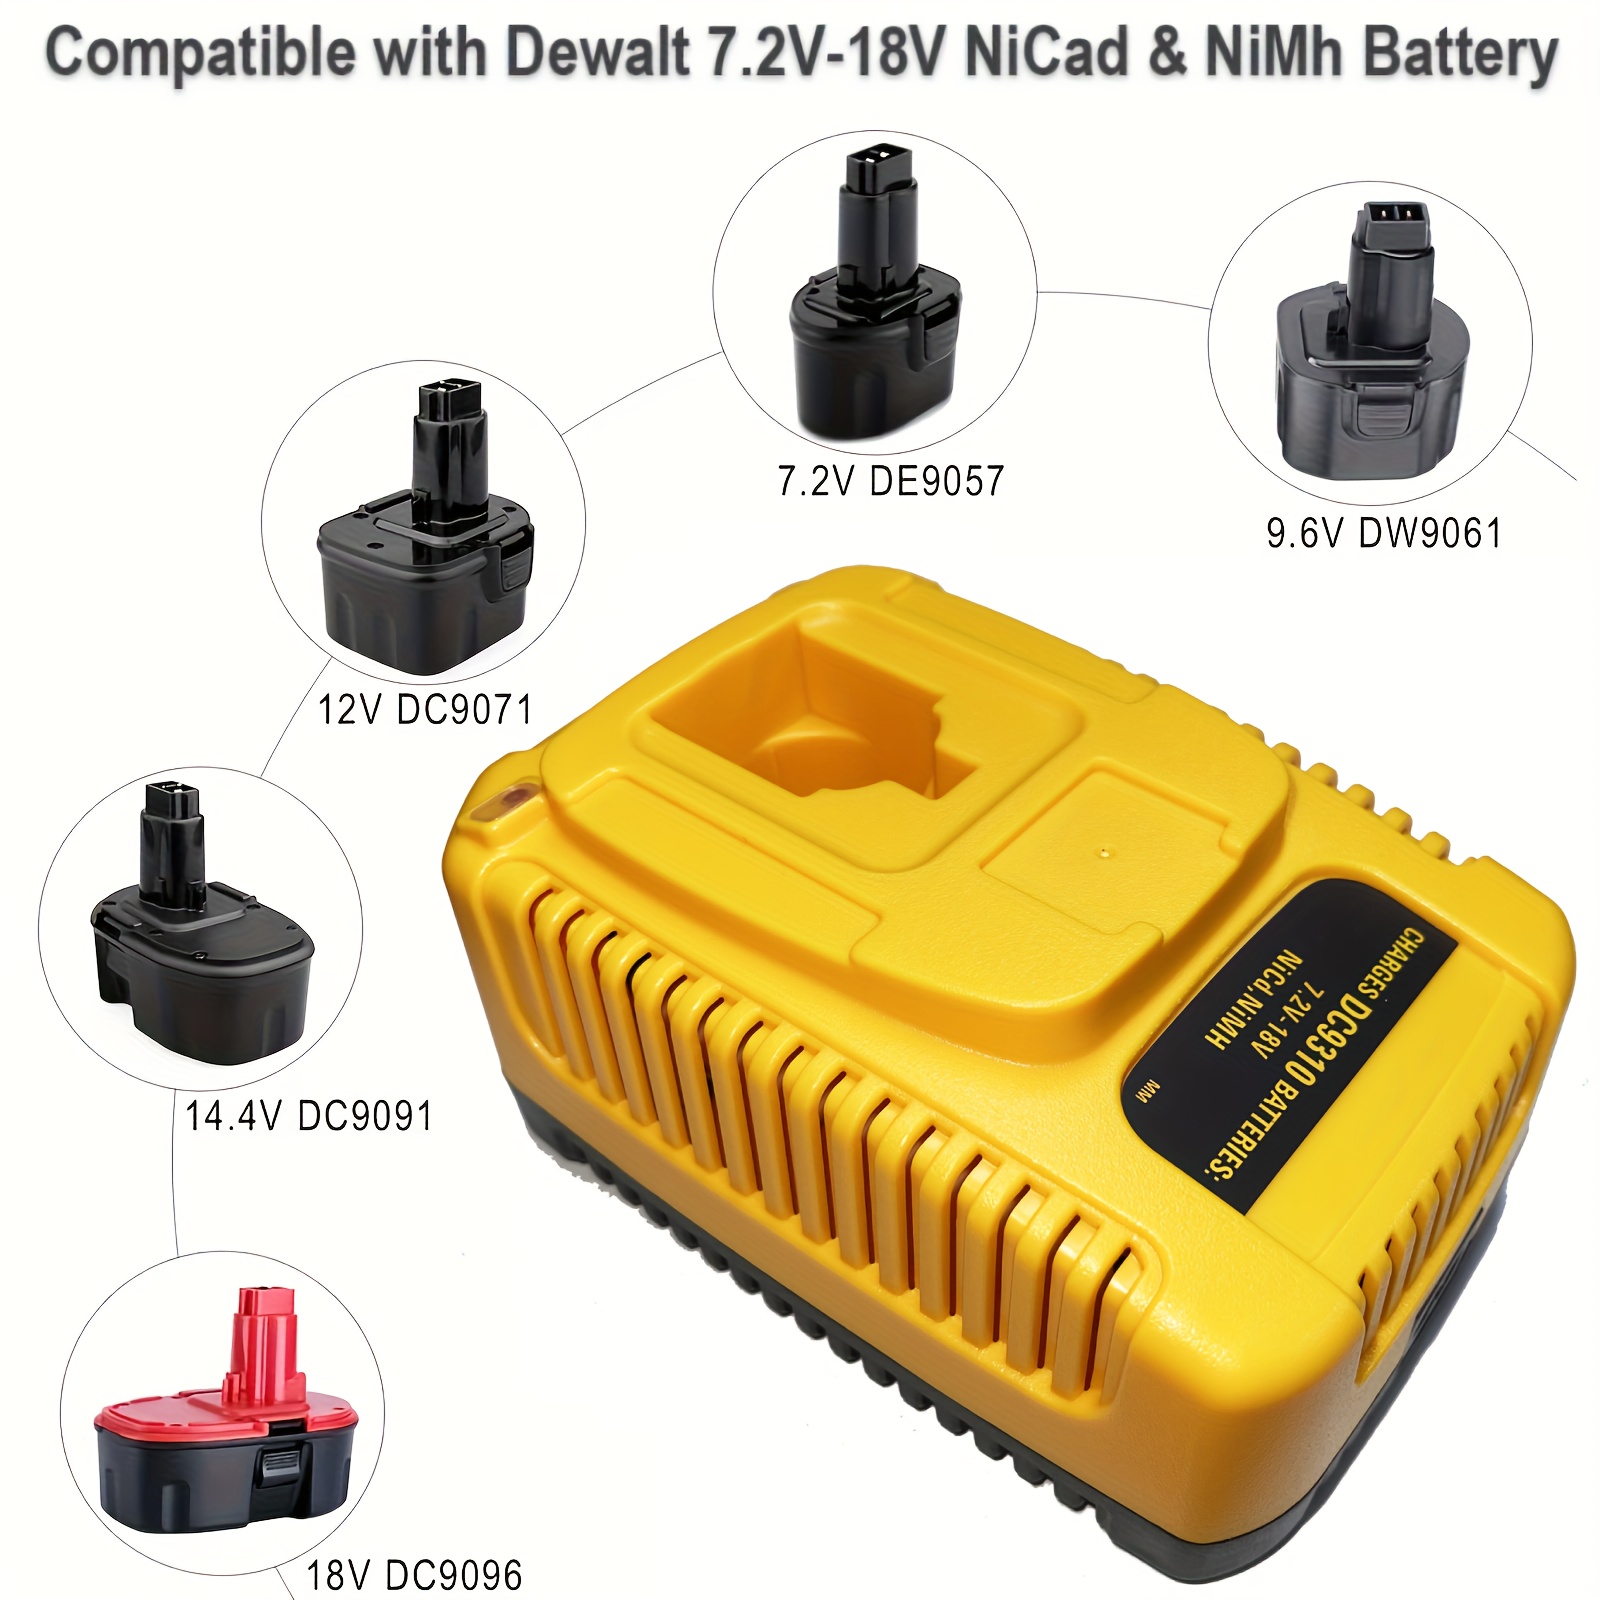 Cargador De Batería Dewalt 18v Compatible Con Dw9116, Dw9226